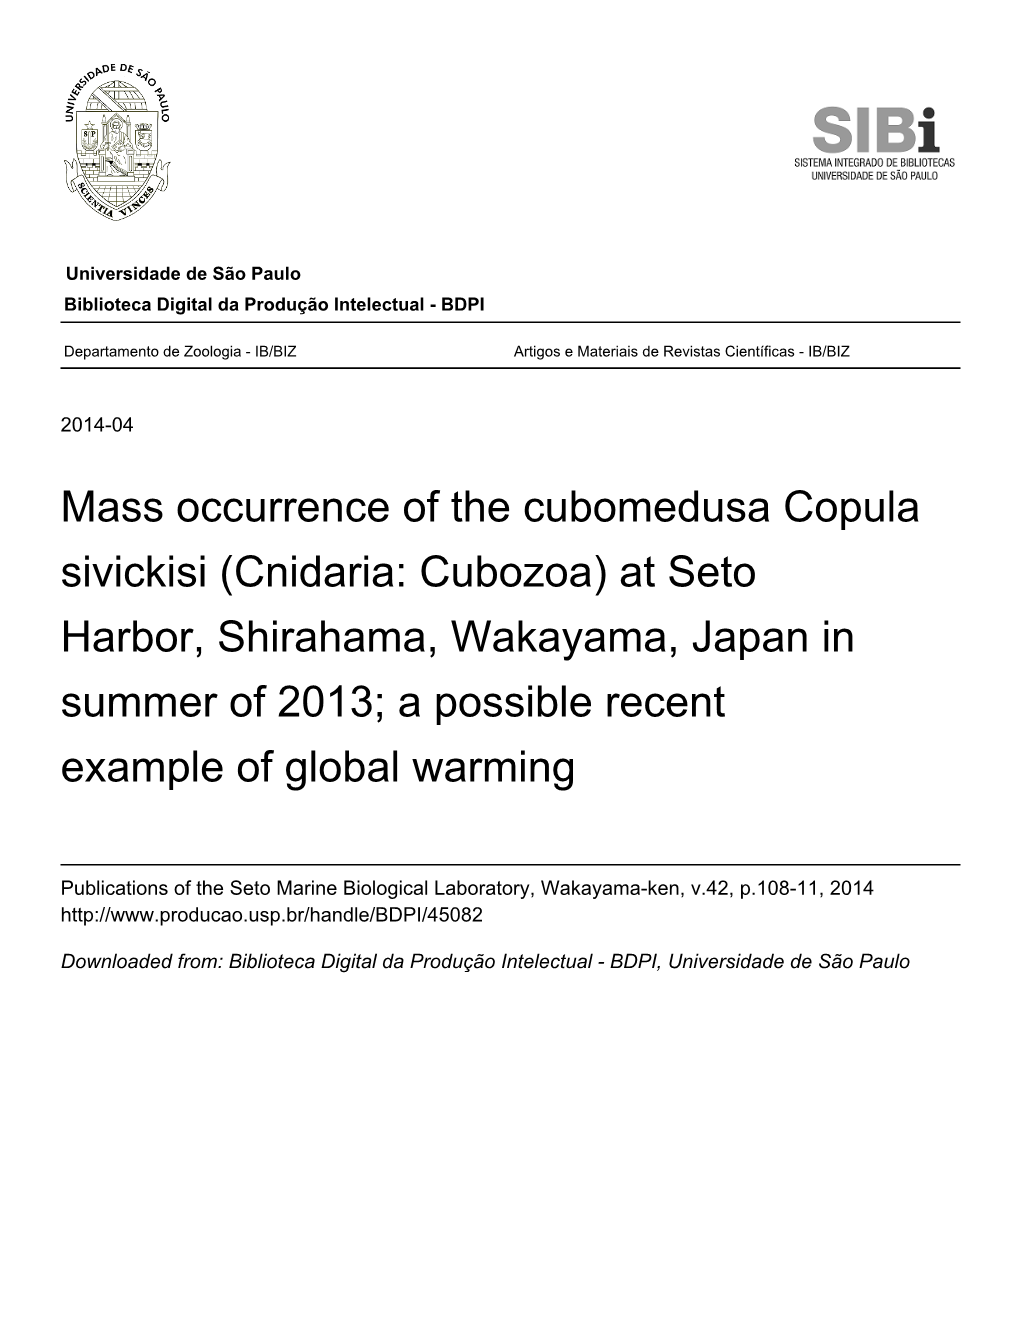 Mass Occurrence of the Cubomedusa Copula Sivickisi (Cnidaria: Cubozoa